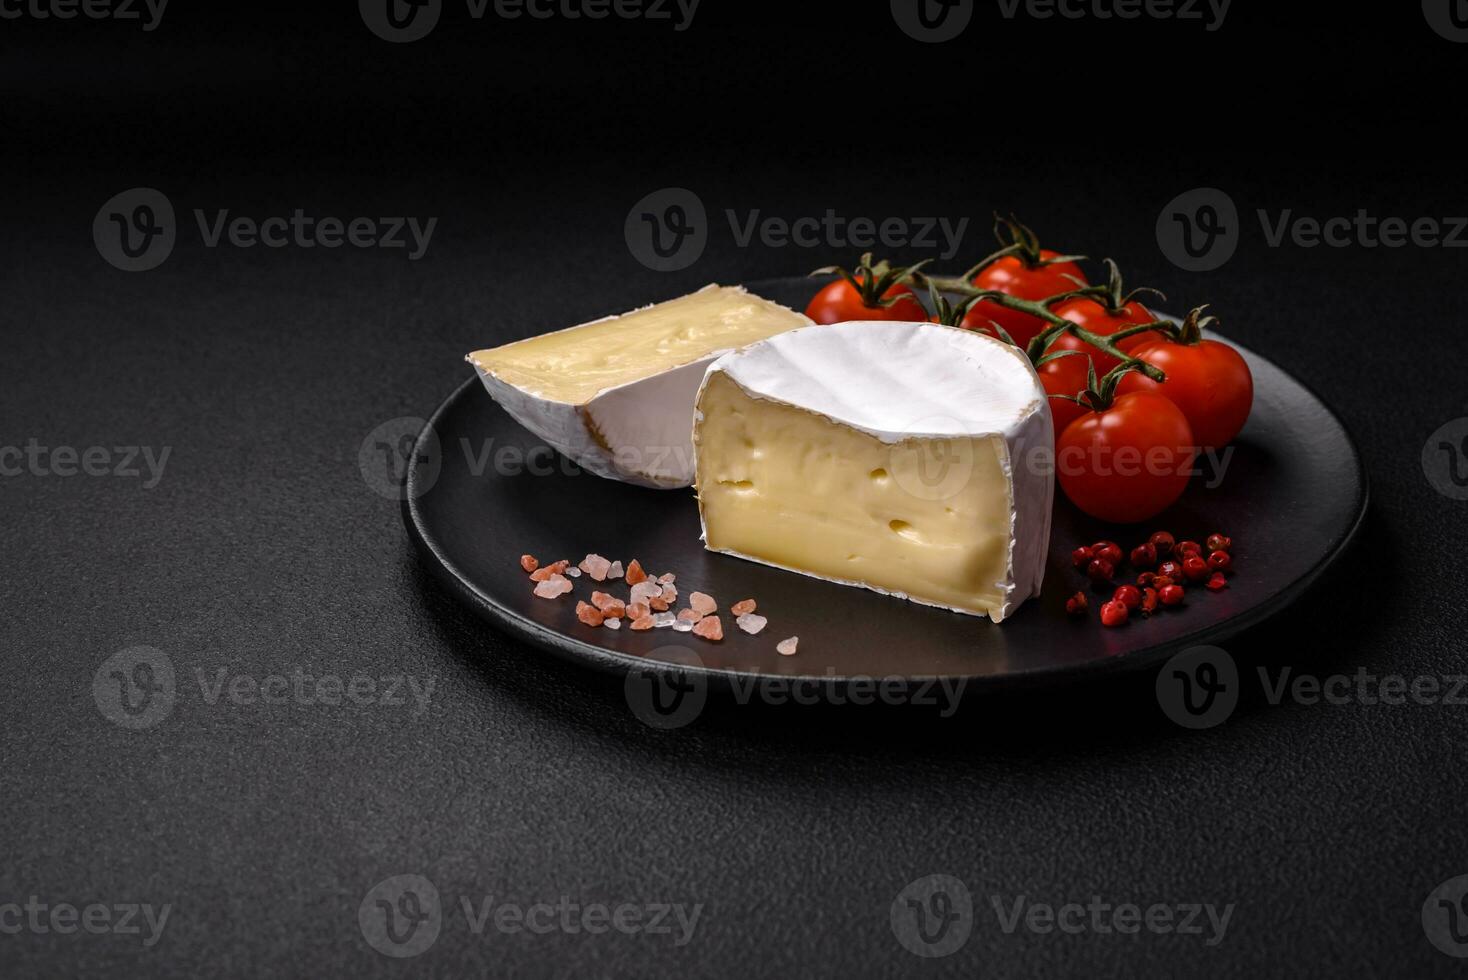 délicieux Frais Brie fromage dans le forme de une mini tête avec Cerise tomates photo